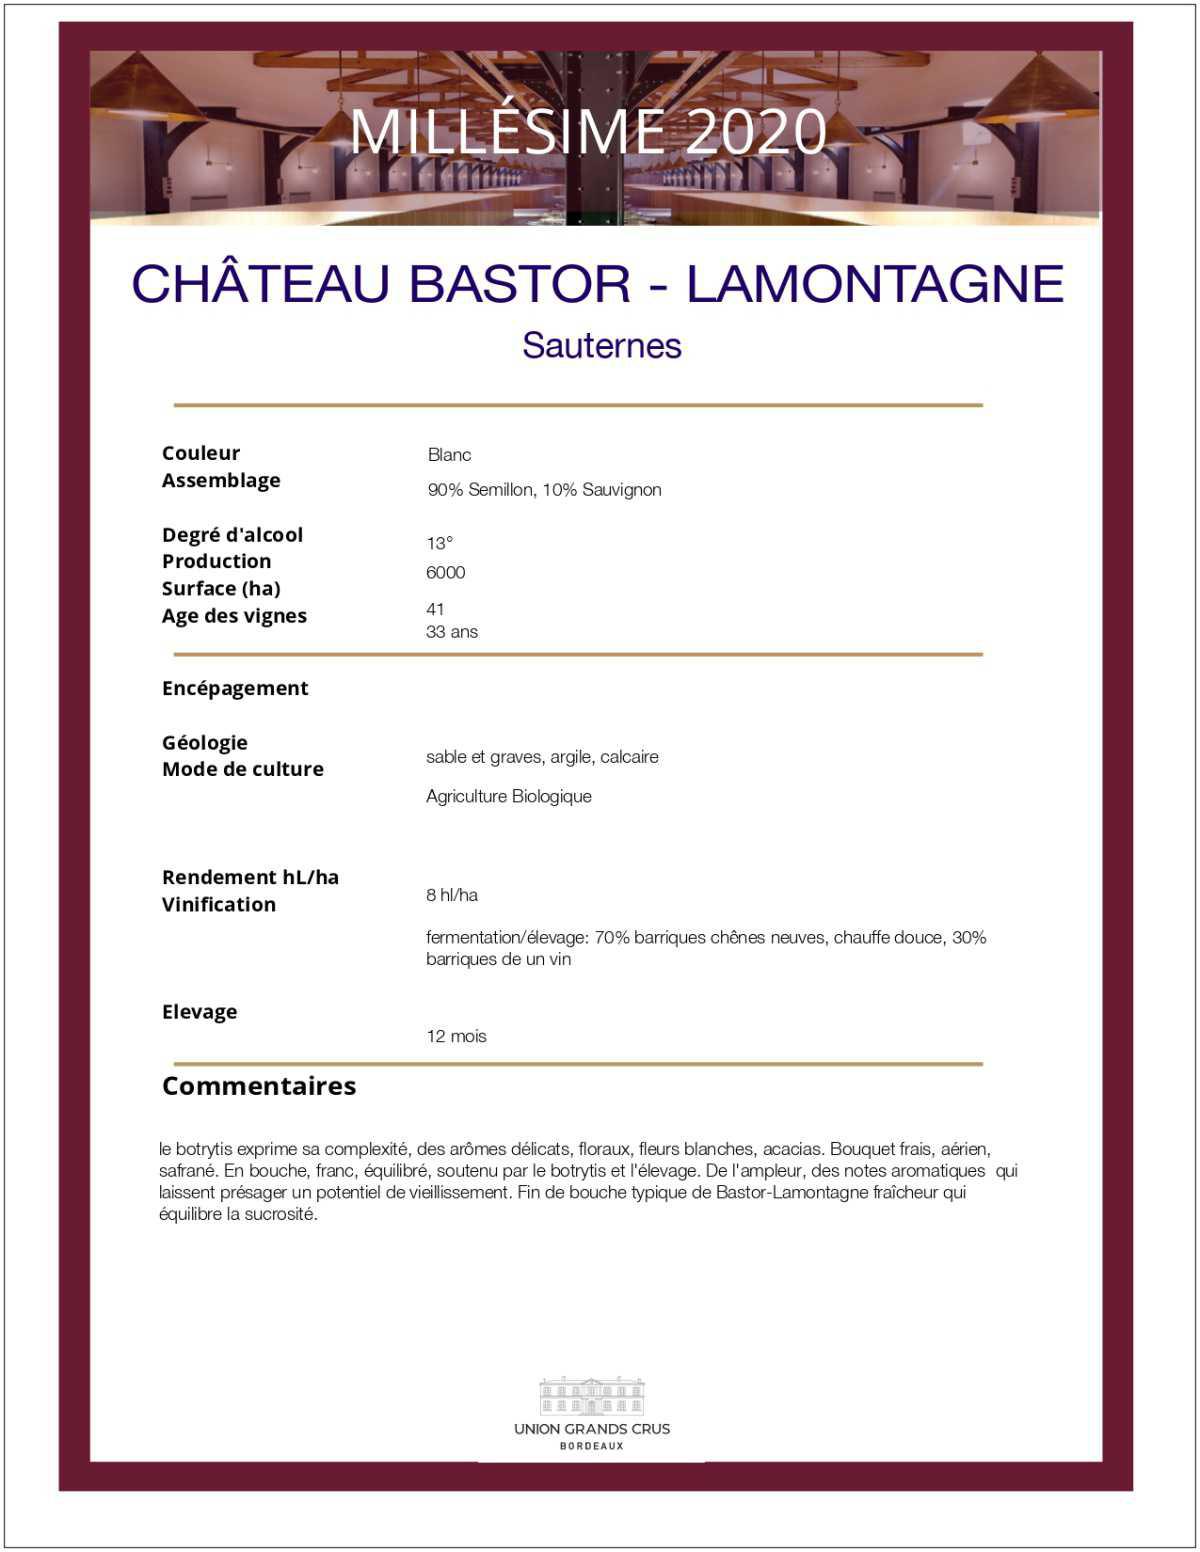 Château Bastor - Lamontagne